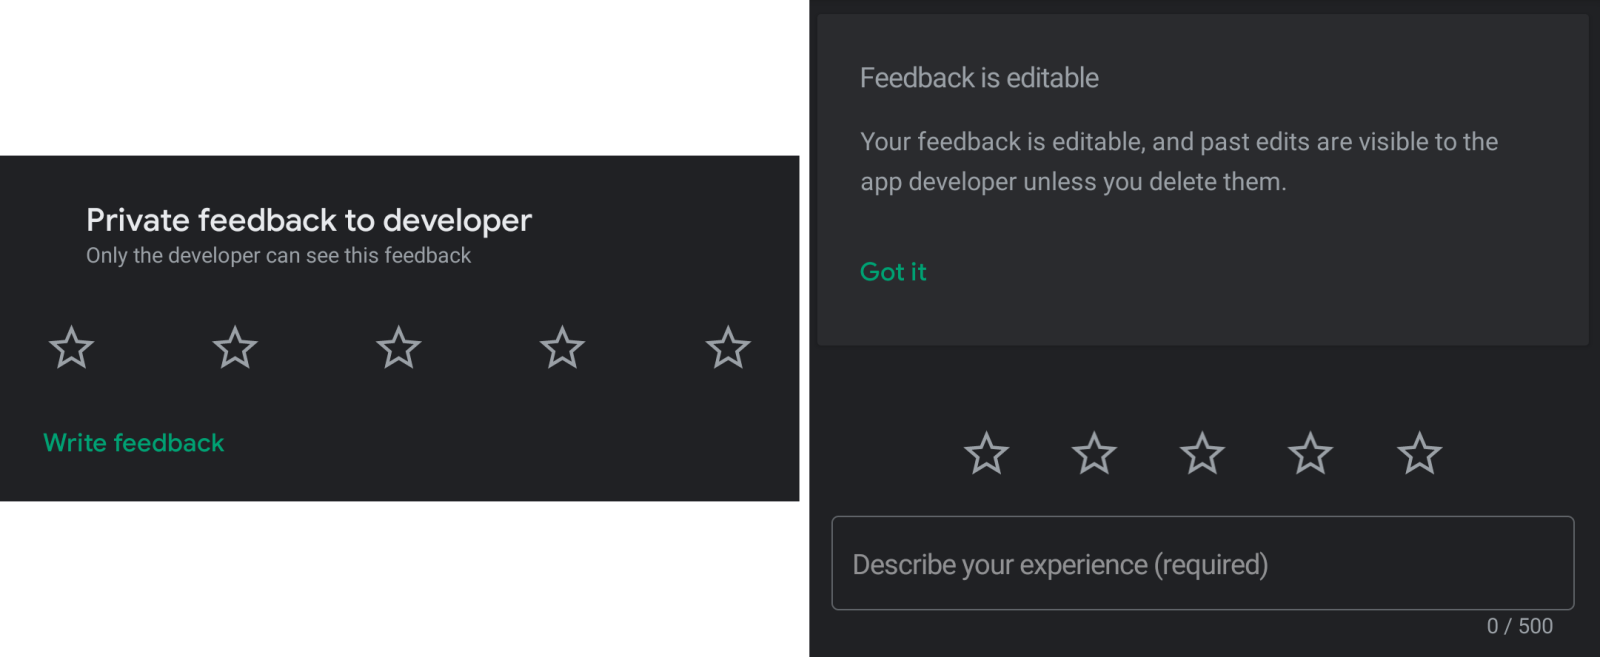 feedback_developer.png